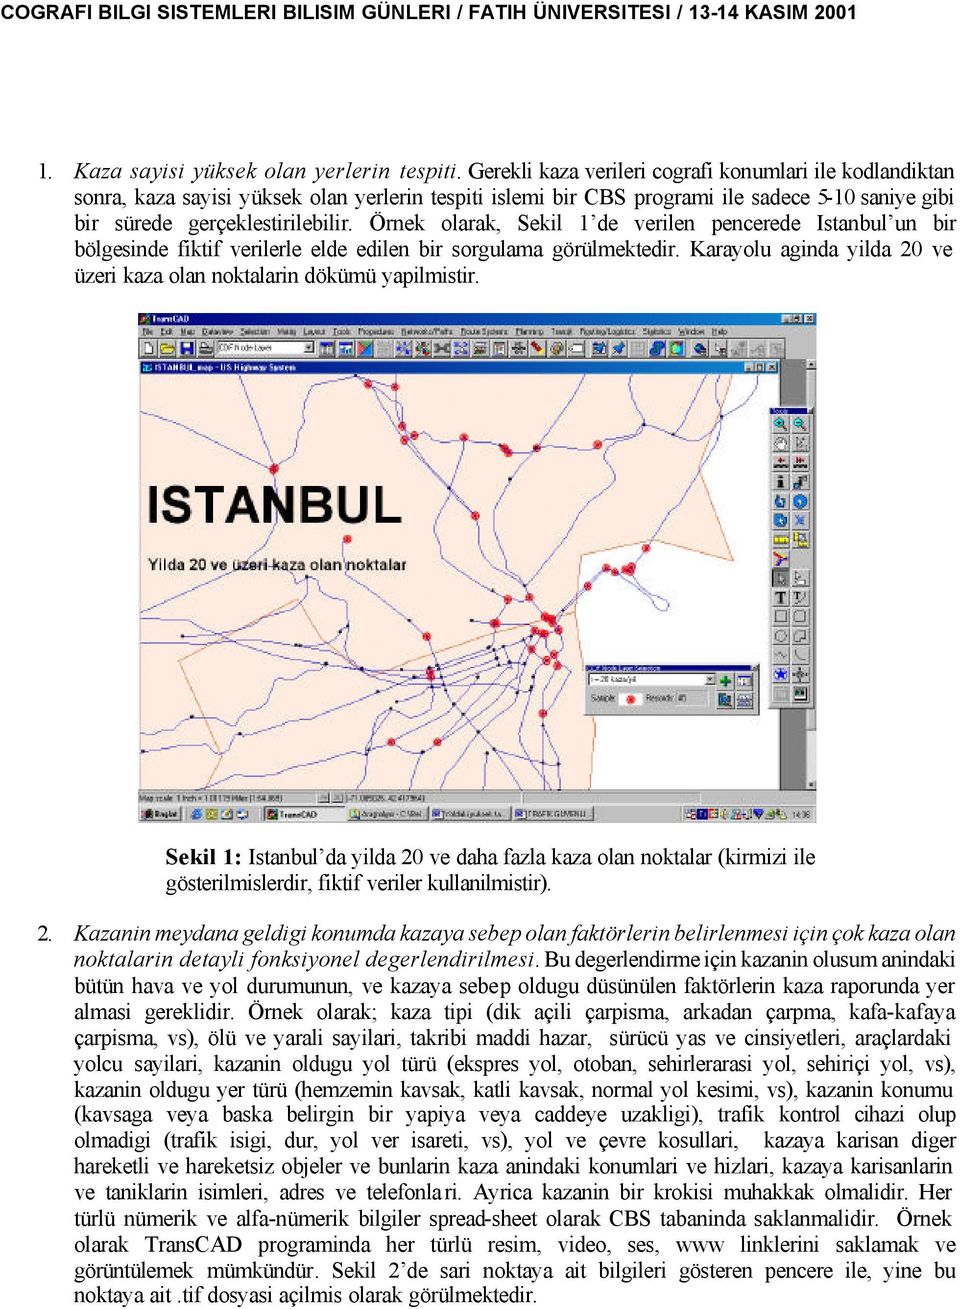 Örne olara, Seil 1 de verilen pencerede Istanbul un bir bölgesinde fitif verilerle elde edilen bir sorgulama görülmetedir. Karayolu aginda yilda 20 ve üzeri aza olan notalarin döümü yapilmistir.